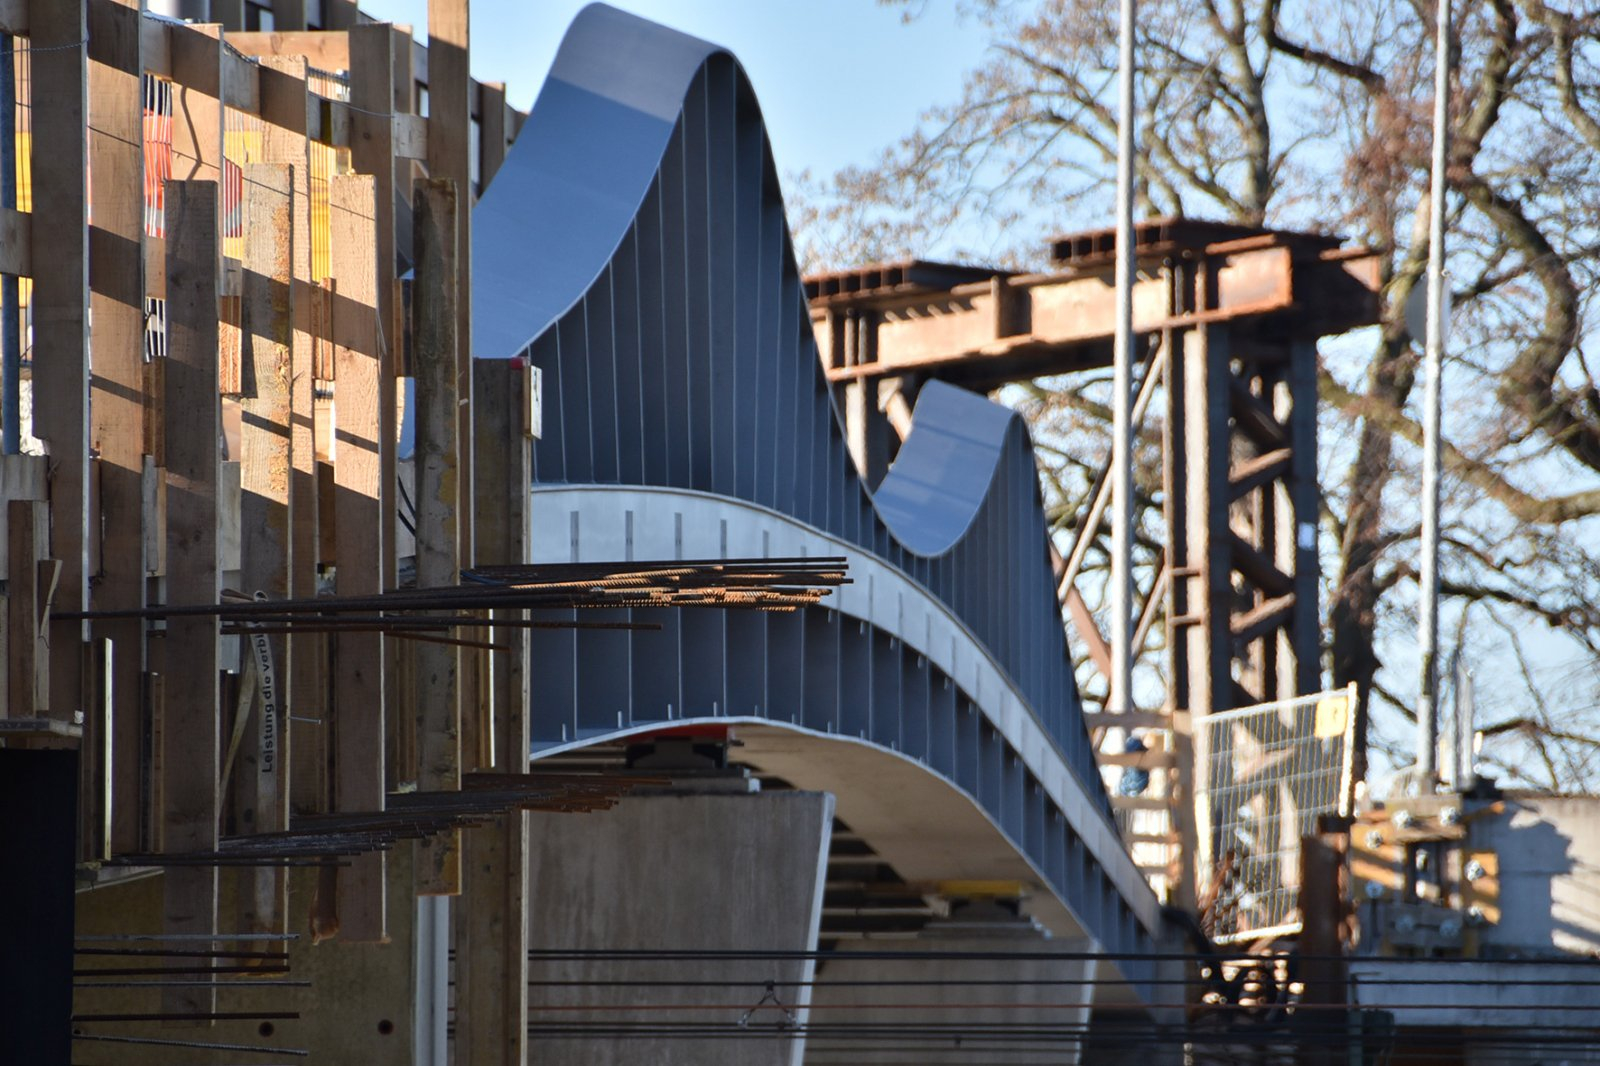 Erneuerung der Thierschbrücke Lindau